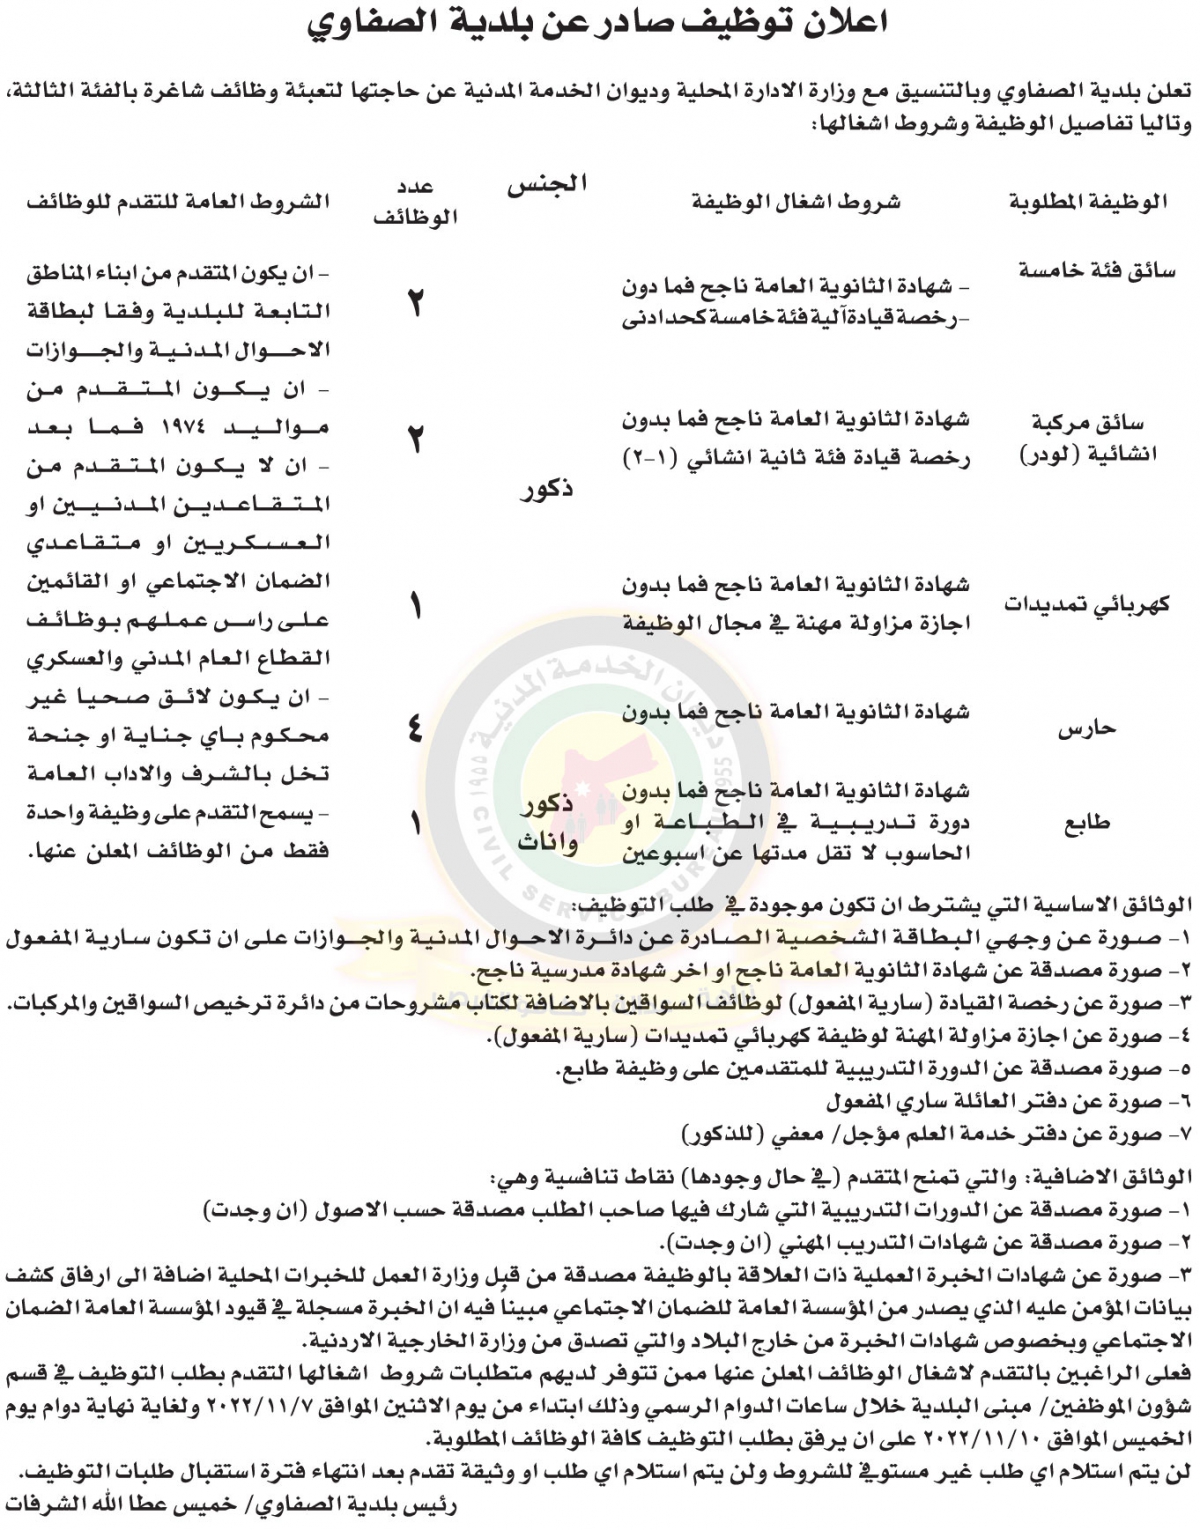 اعلان وظائف شاغرة بالفئة الثالثة صادر عن بلدية الصفاوي